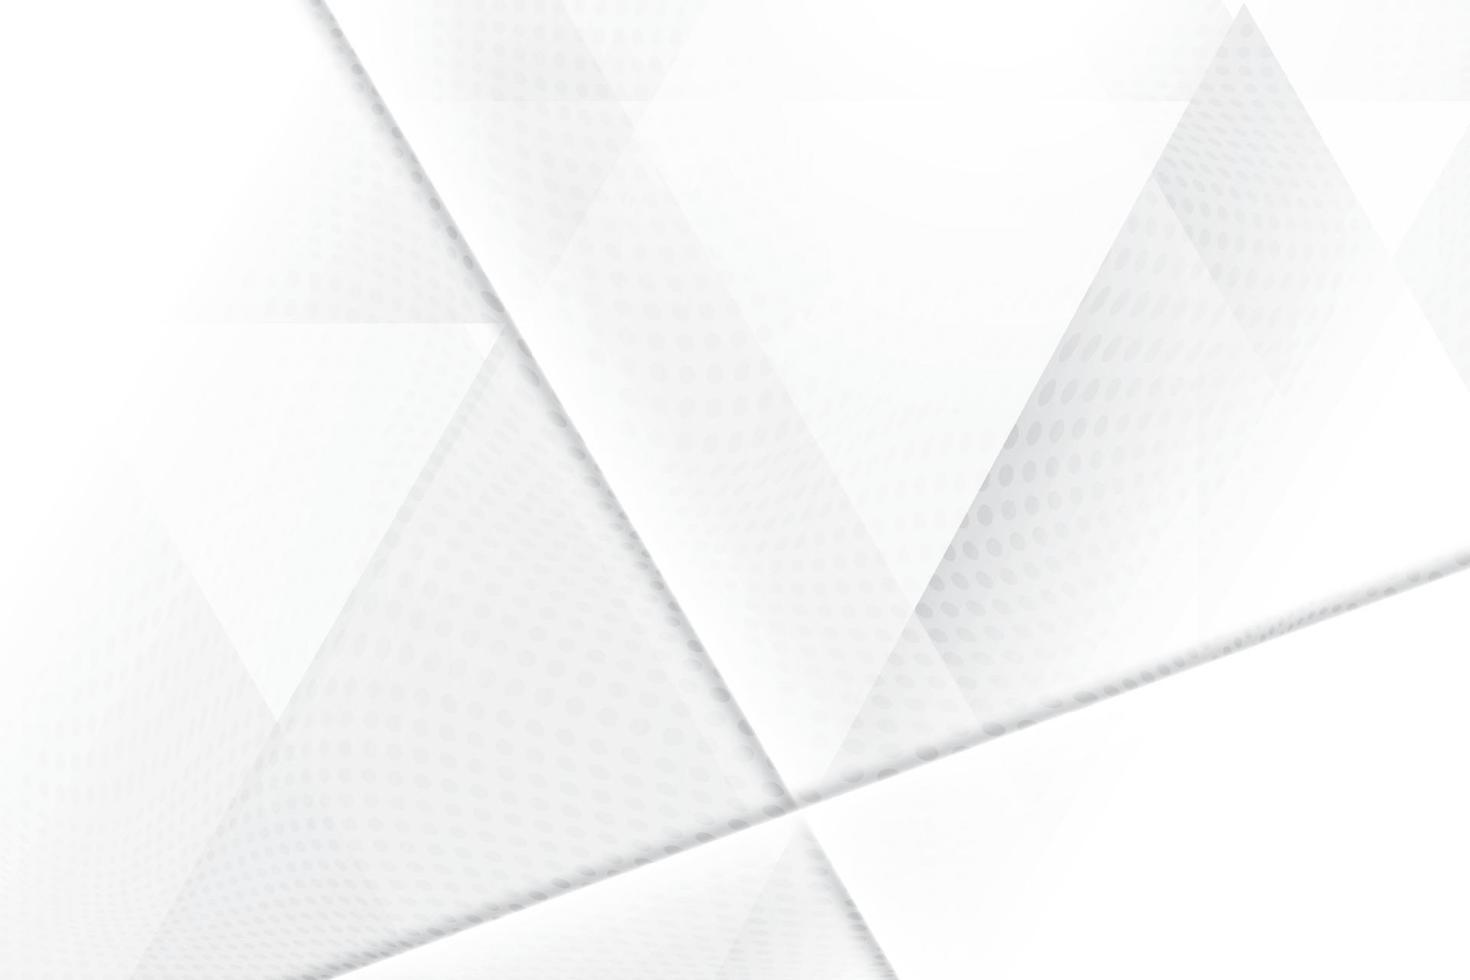 color blanco y gris abstracto, fondo de diseño moderno con forma geométrica. ilustración vectorial. vector